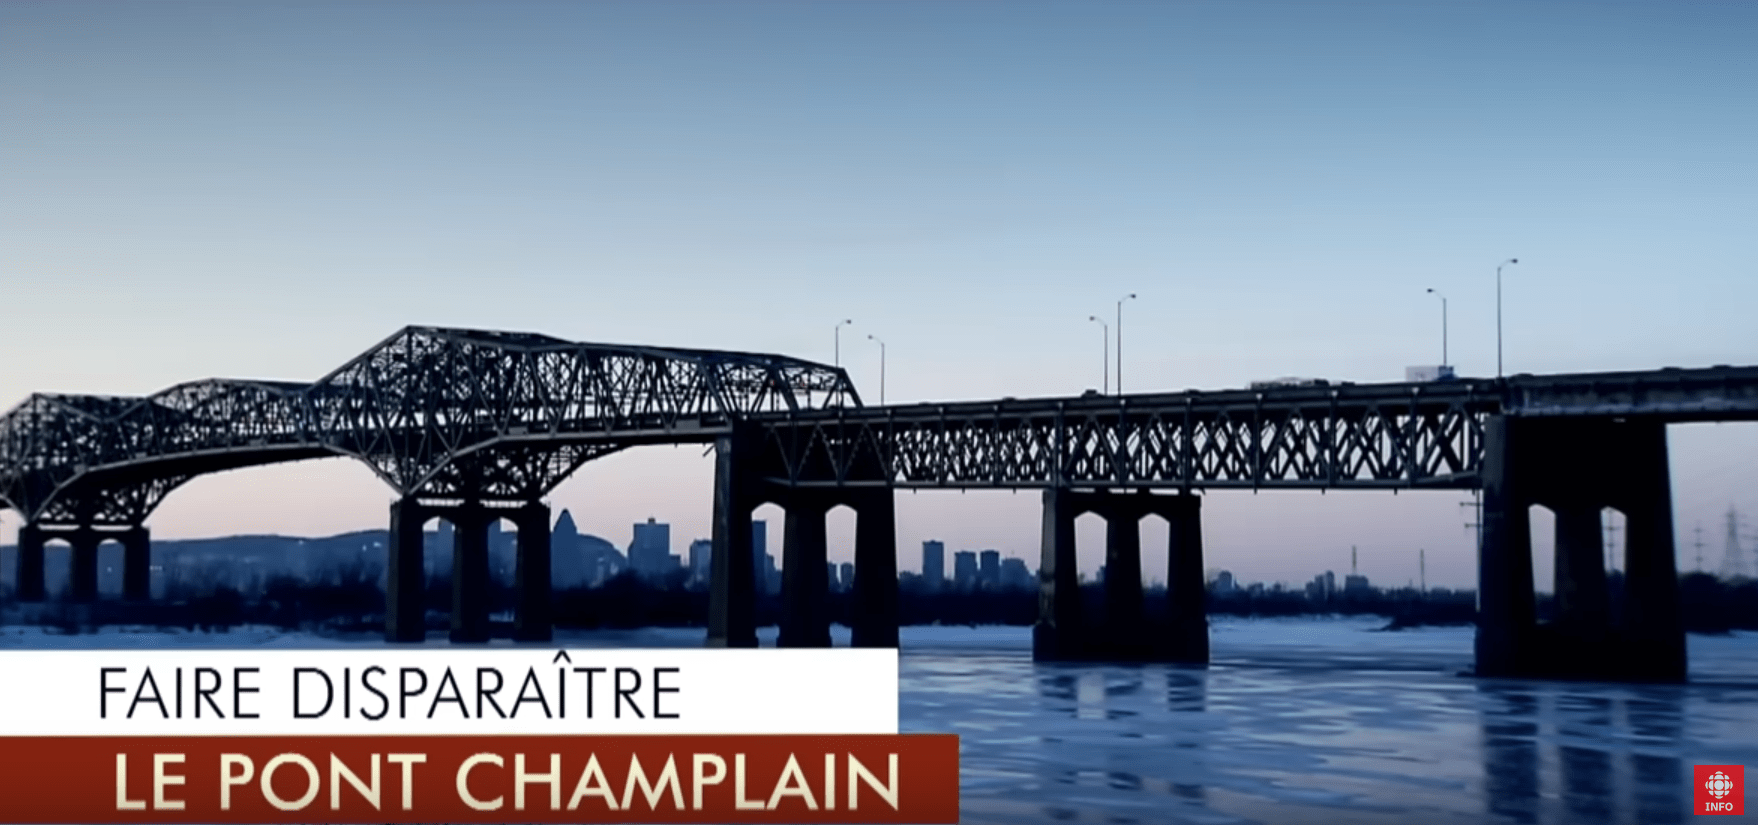 Déconstruire le pont Champlain